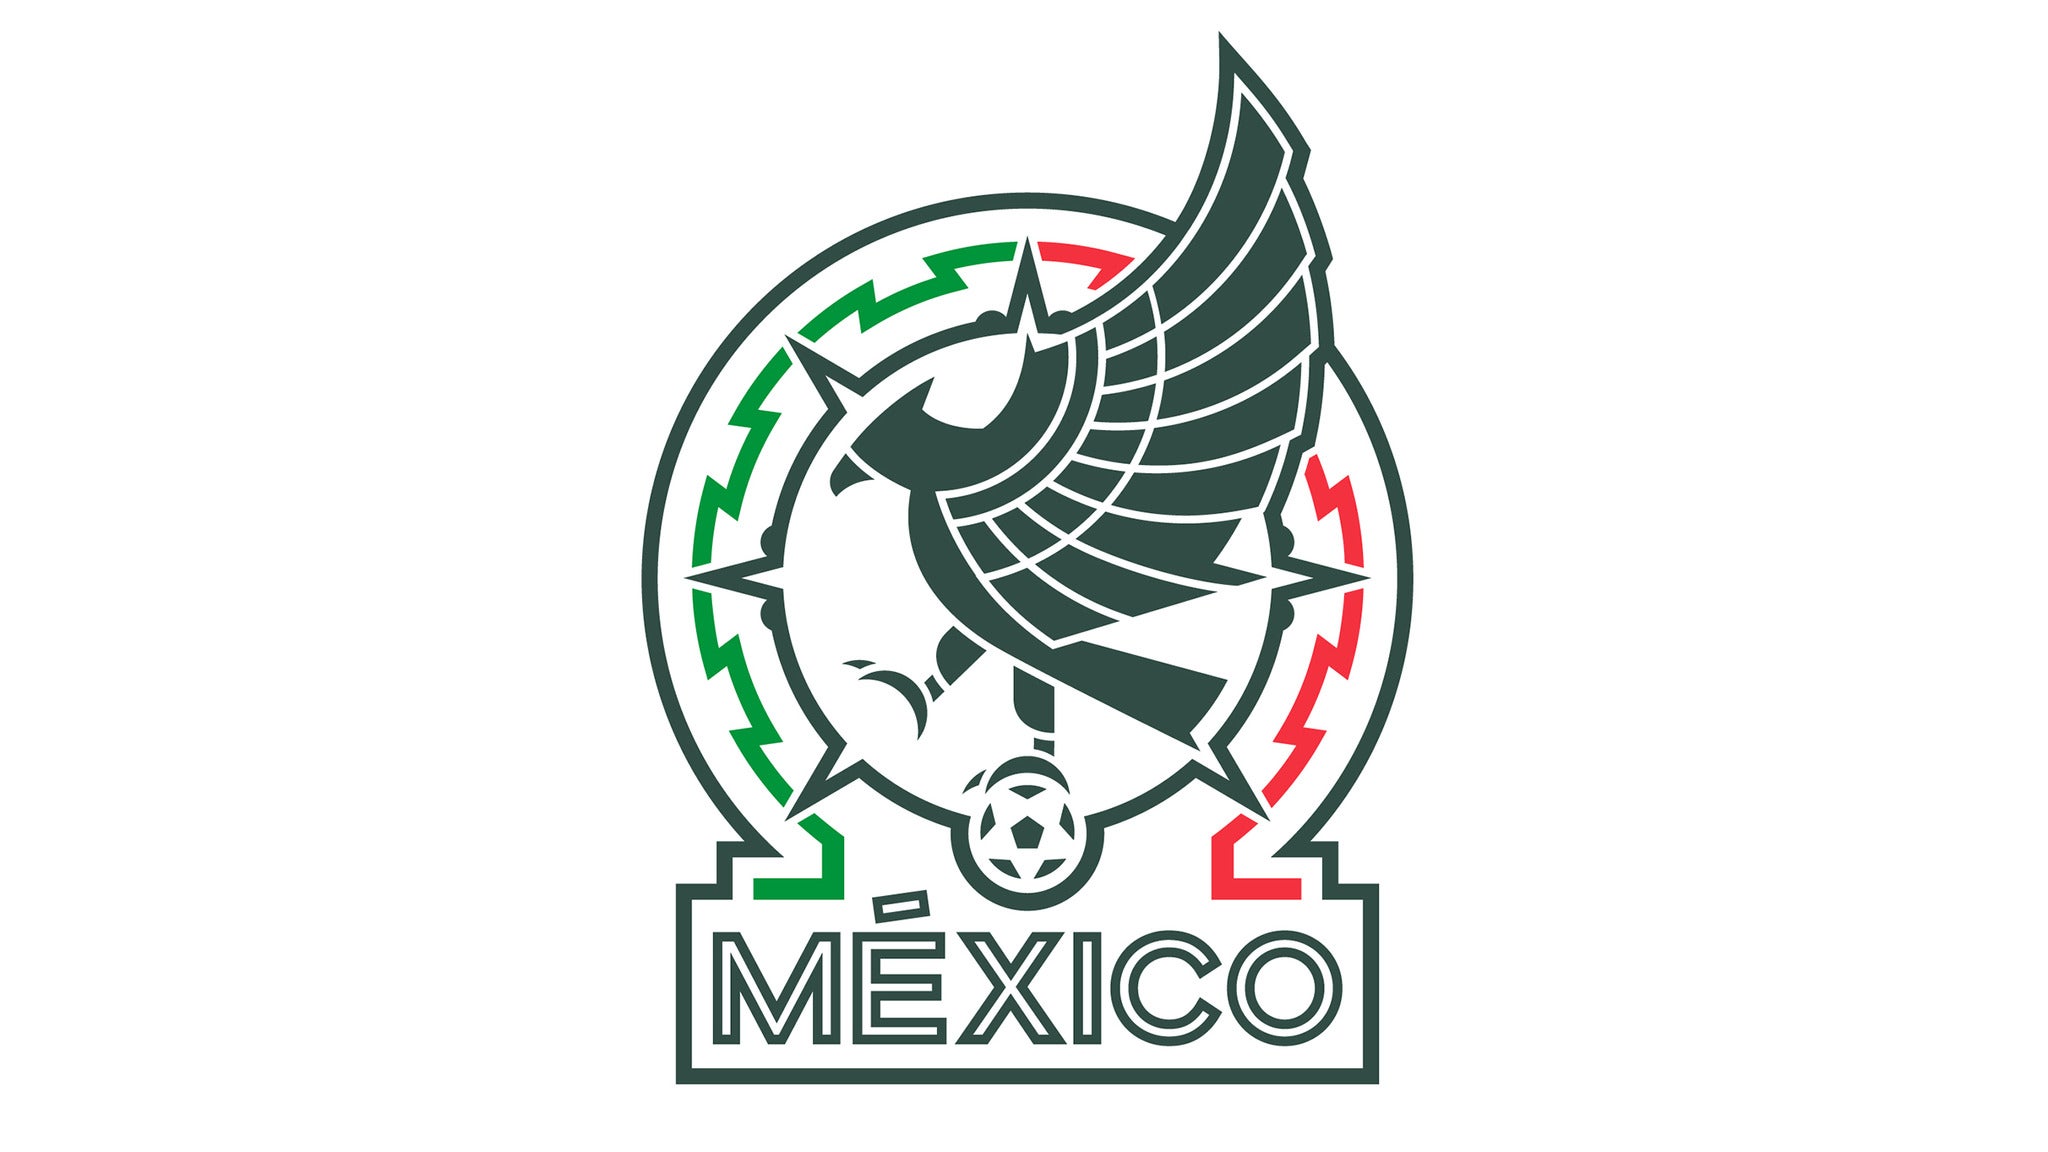 Mexico National Soccer vs. Peru National Soccer Team